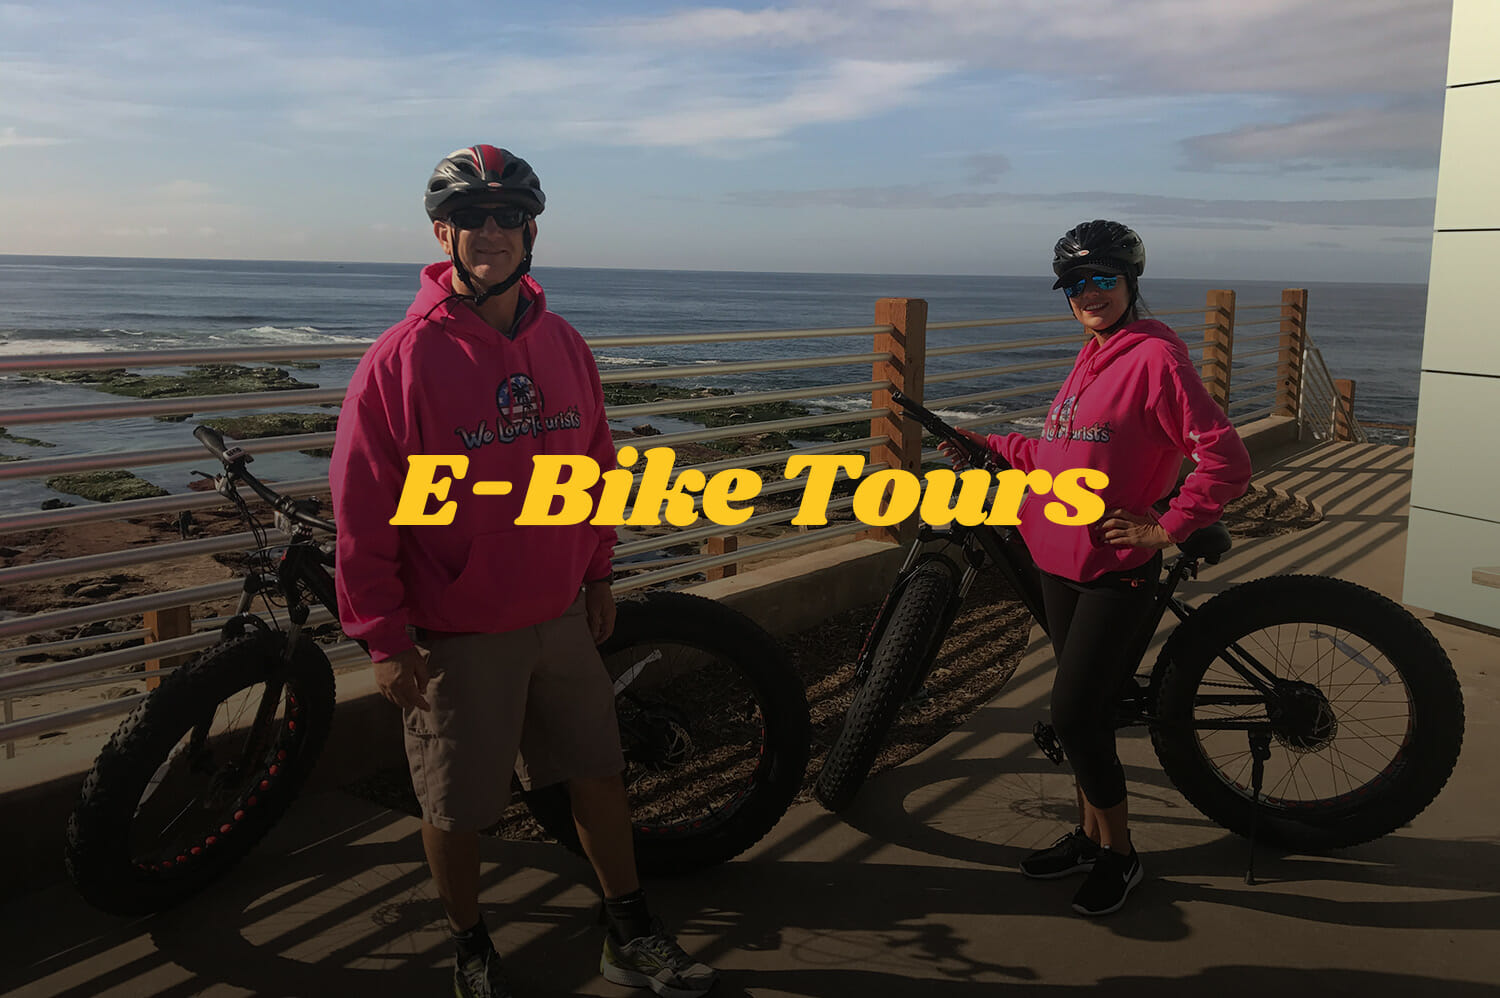 la jolla electric bike tour